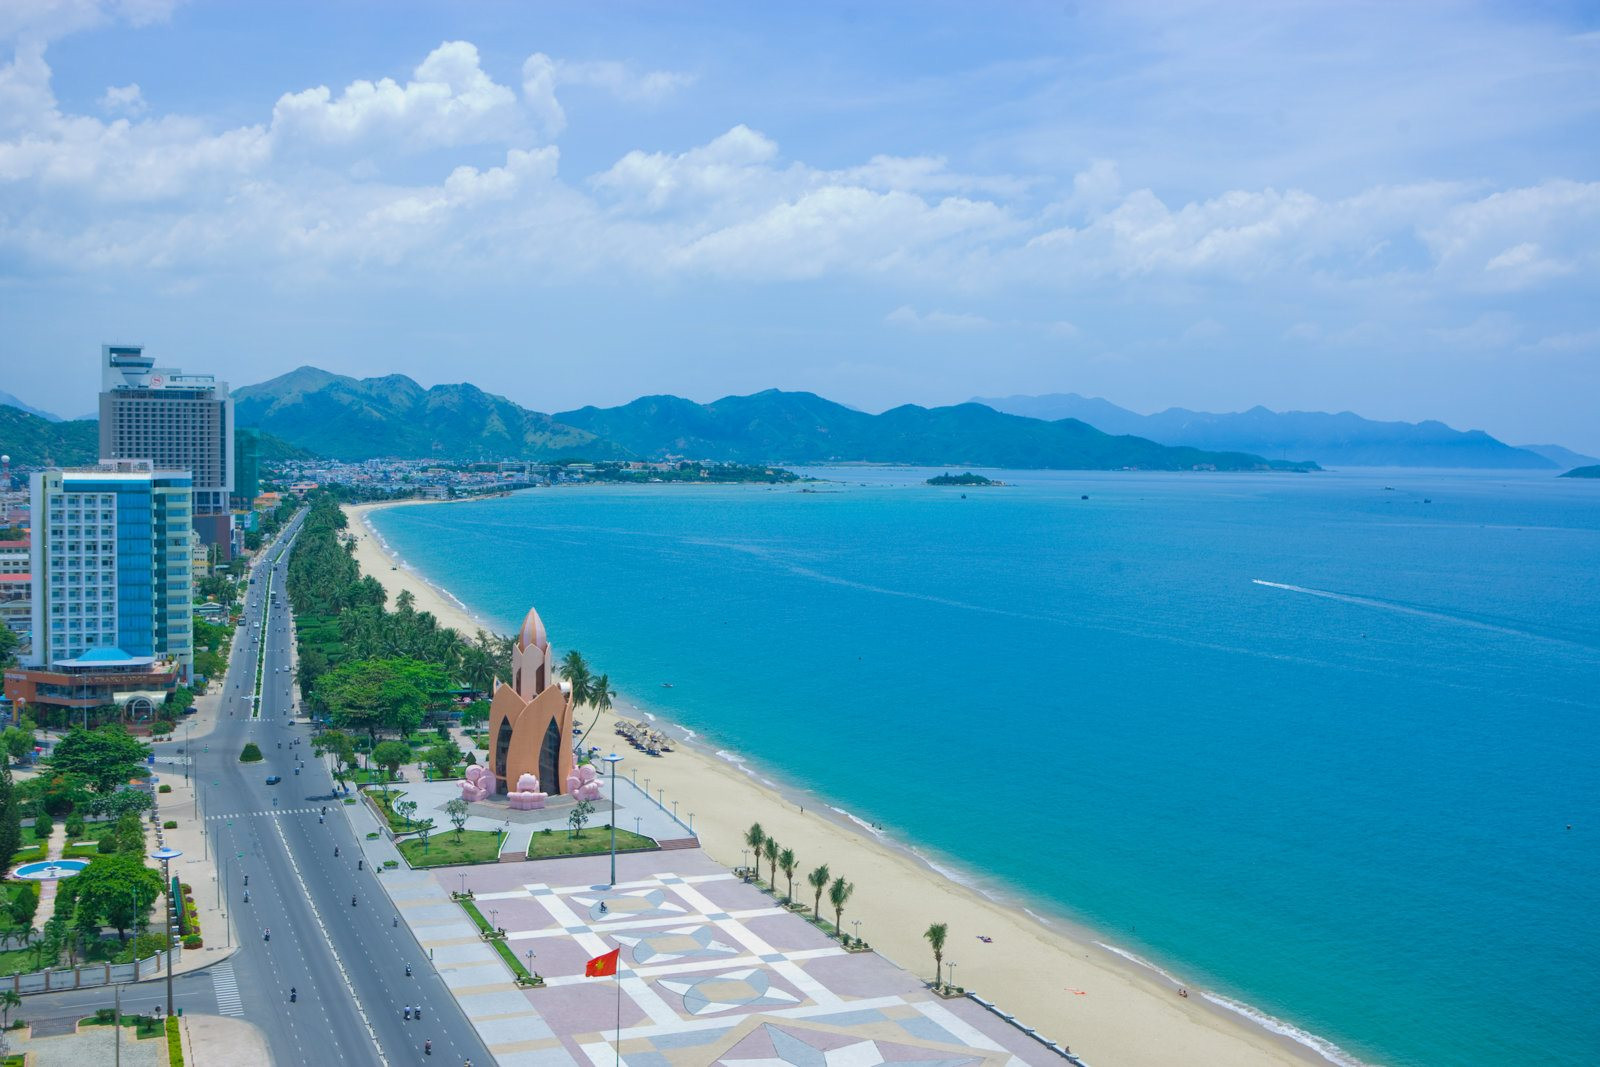 Tỉnh miền Trung có bờ biển dài nhất Việt Nam sắp lên thành phố trực thuộc trung ương, gần đây liên tục đón loạt dự án lớn- Ảnh 1.